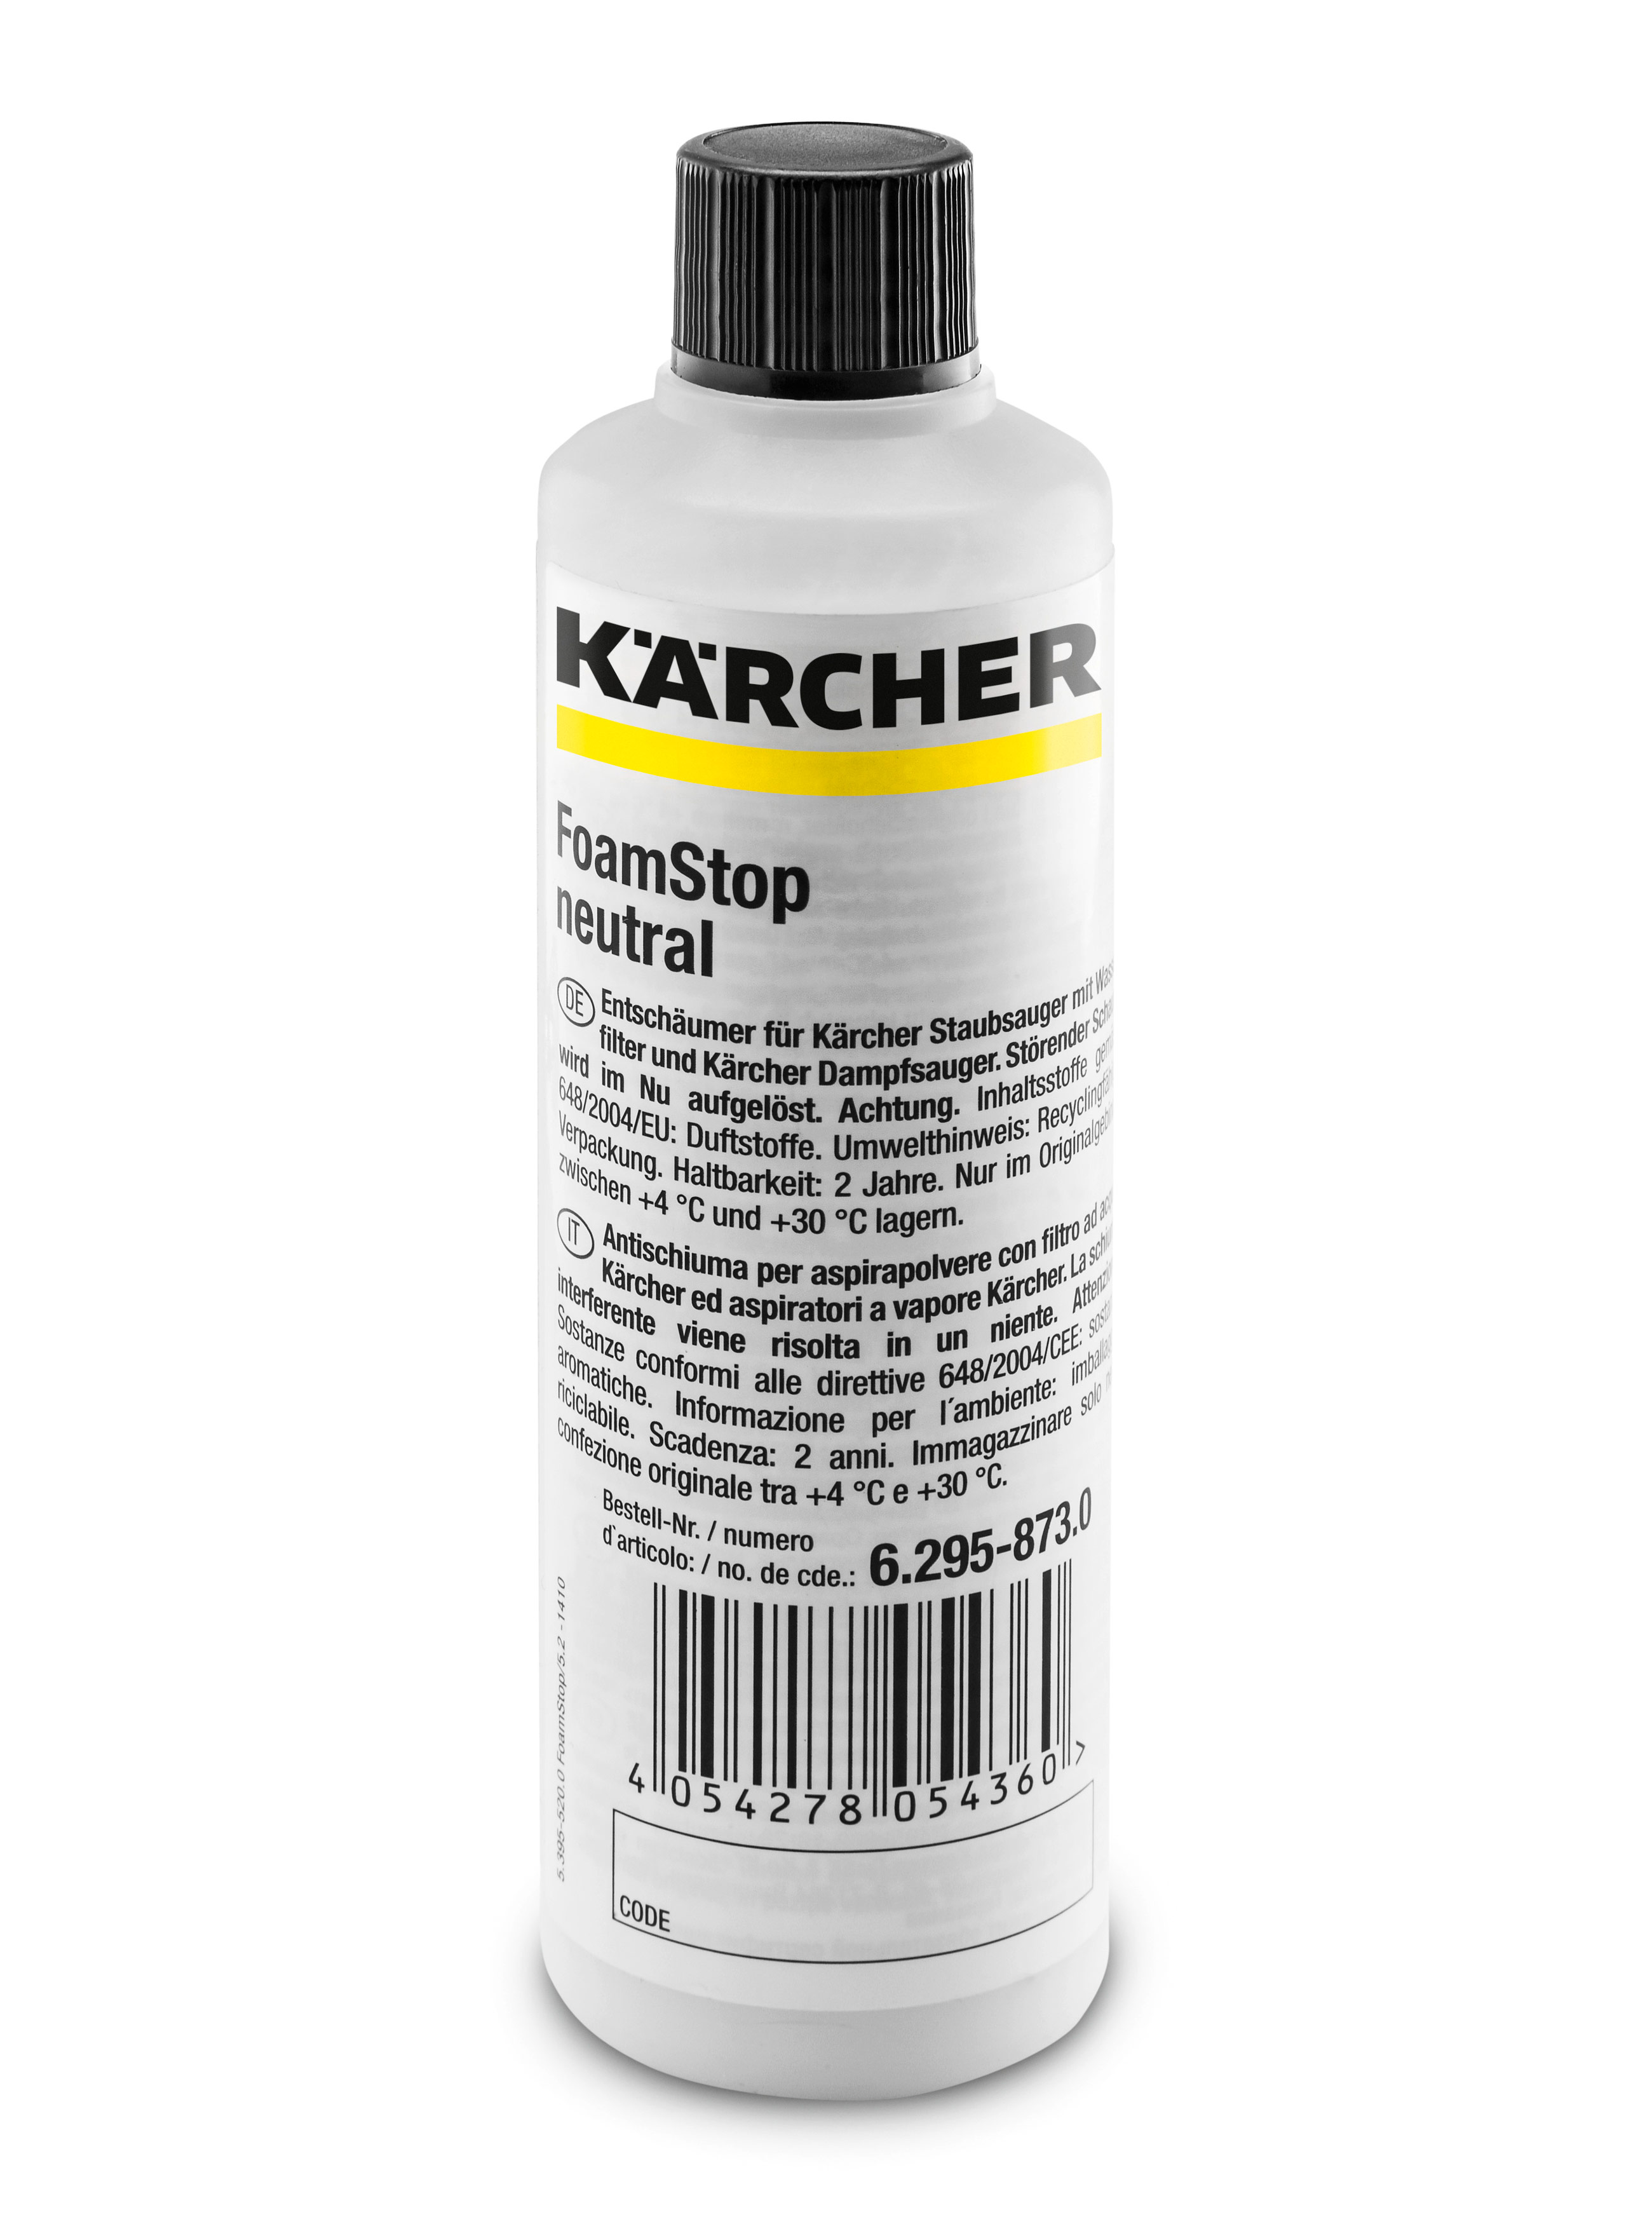 Пеногаситель Karcher 6.295-873.0 Foam Stop Neutral бутылочный распылитель snow foam совместимый с karcher k2 k7 pukkr